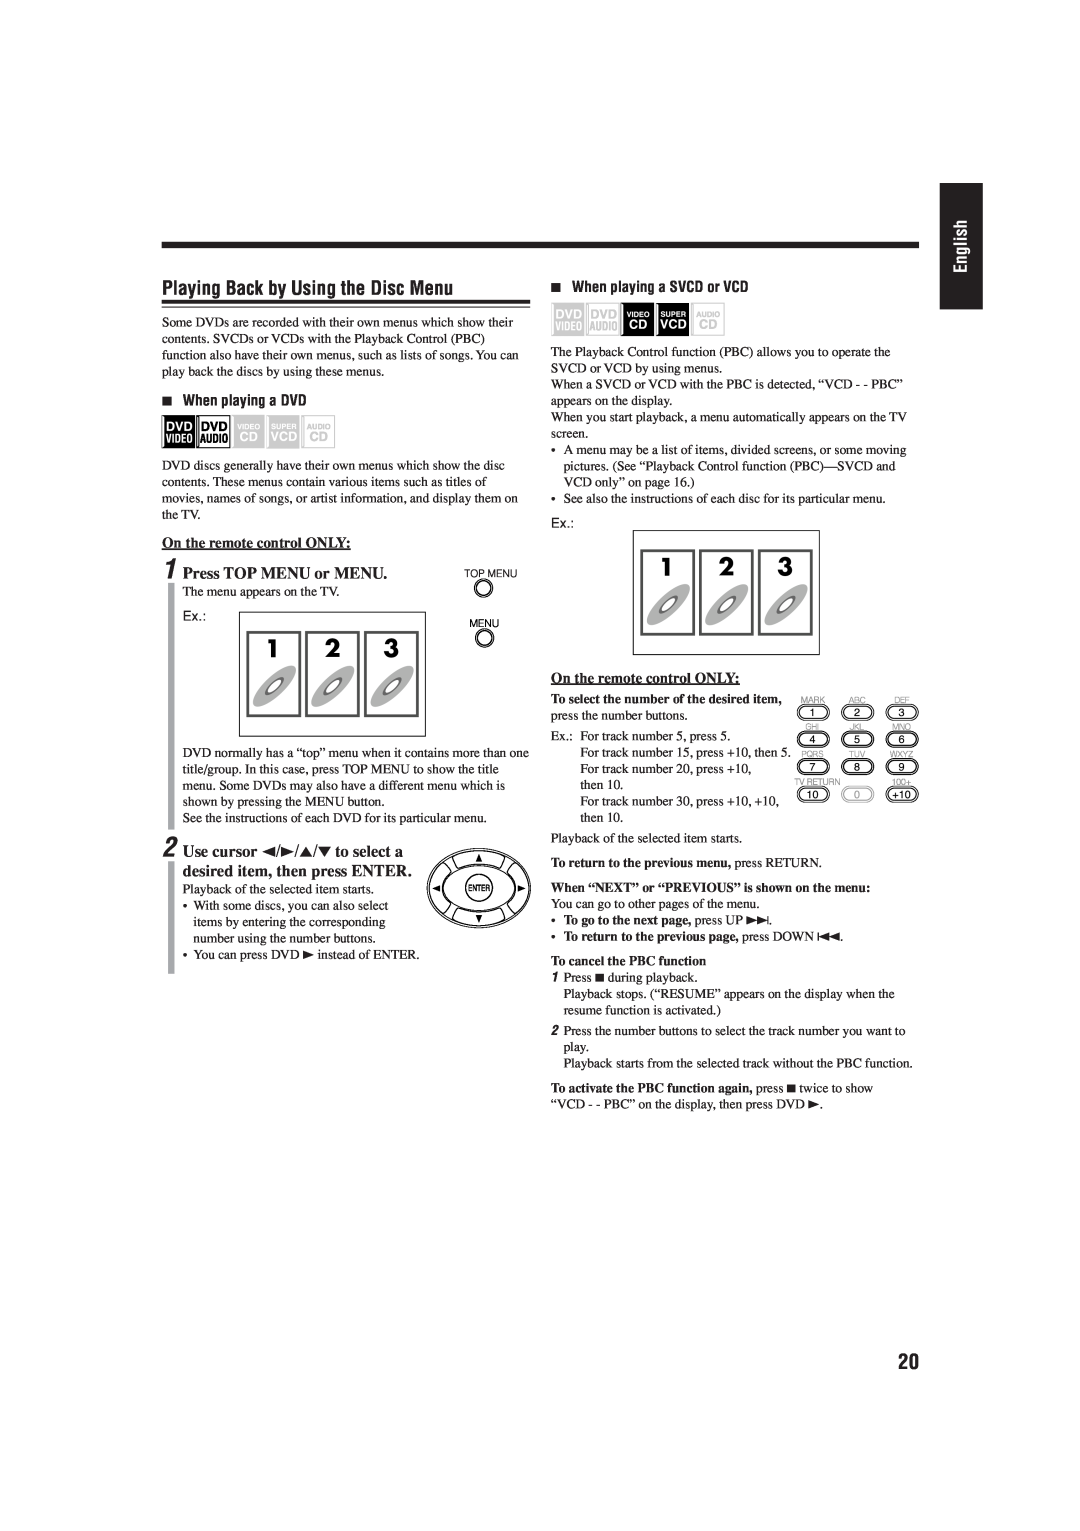 JVC UX-J99DVD manual Playing Back by Using the Disc Menu, Press TOP MENU or MENU, English, 7When playing a DVD 